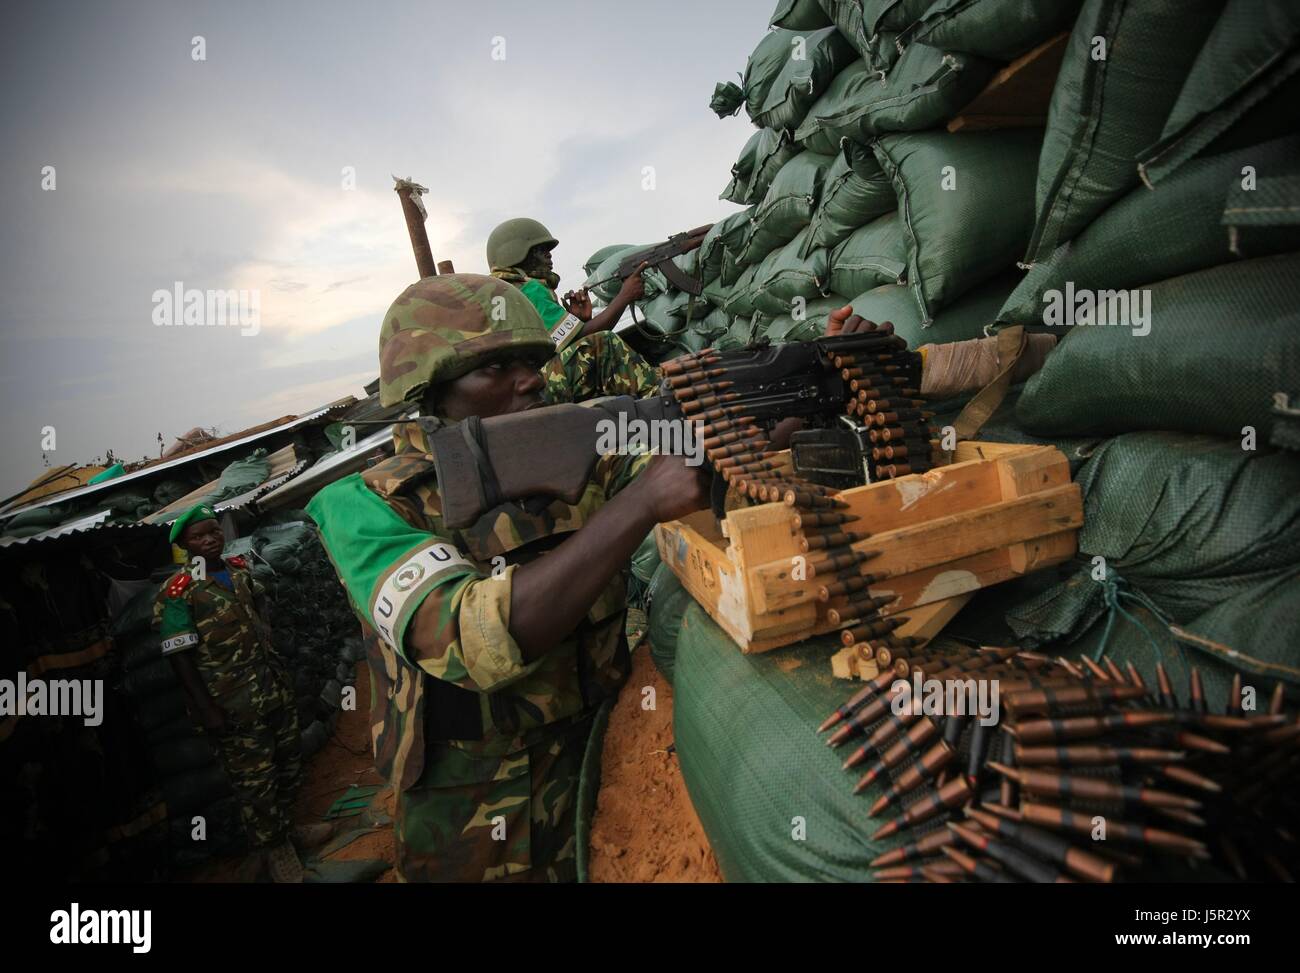 Mission de l'Union africaine en Somalie (AMISOM) des soldats burundais de l'homme en première ligne un territoire récemment capturés dans les insurgés dans le district de Deynile, le 17 novembre 2011 près de Mogadiscio, en Somalie. (Photo par Stuart Price/ANISOM par Planetpix) Banque D'Images